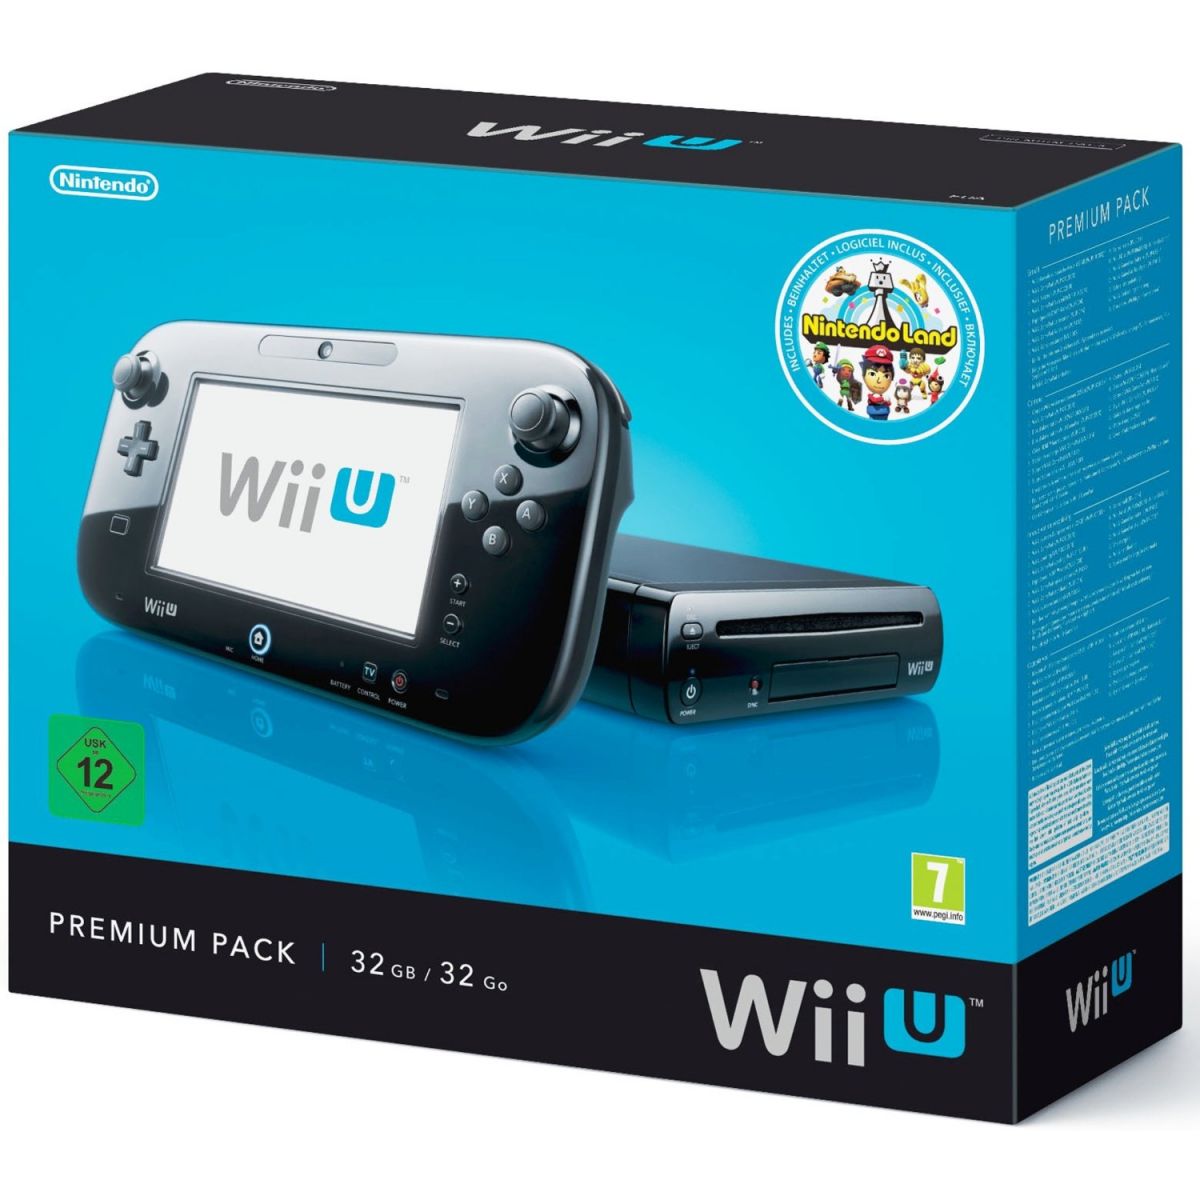 Erscheinungsdatum & Preis der Wii U – Hartware